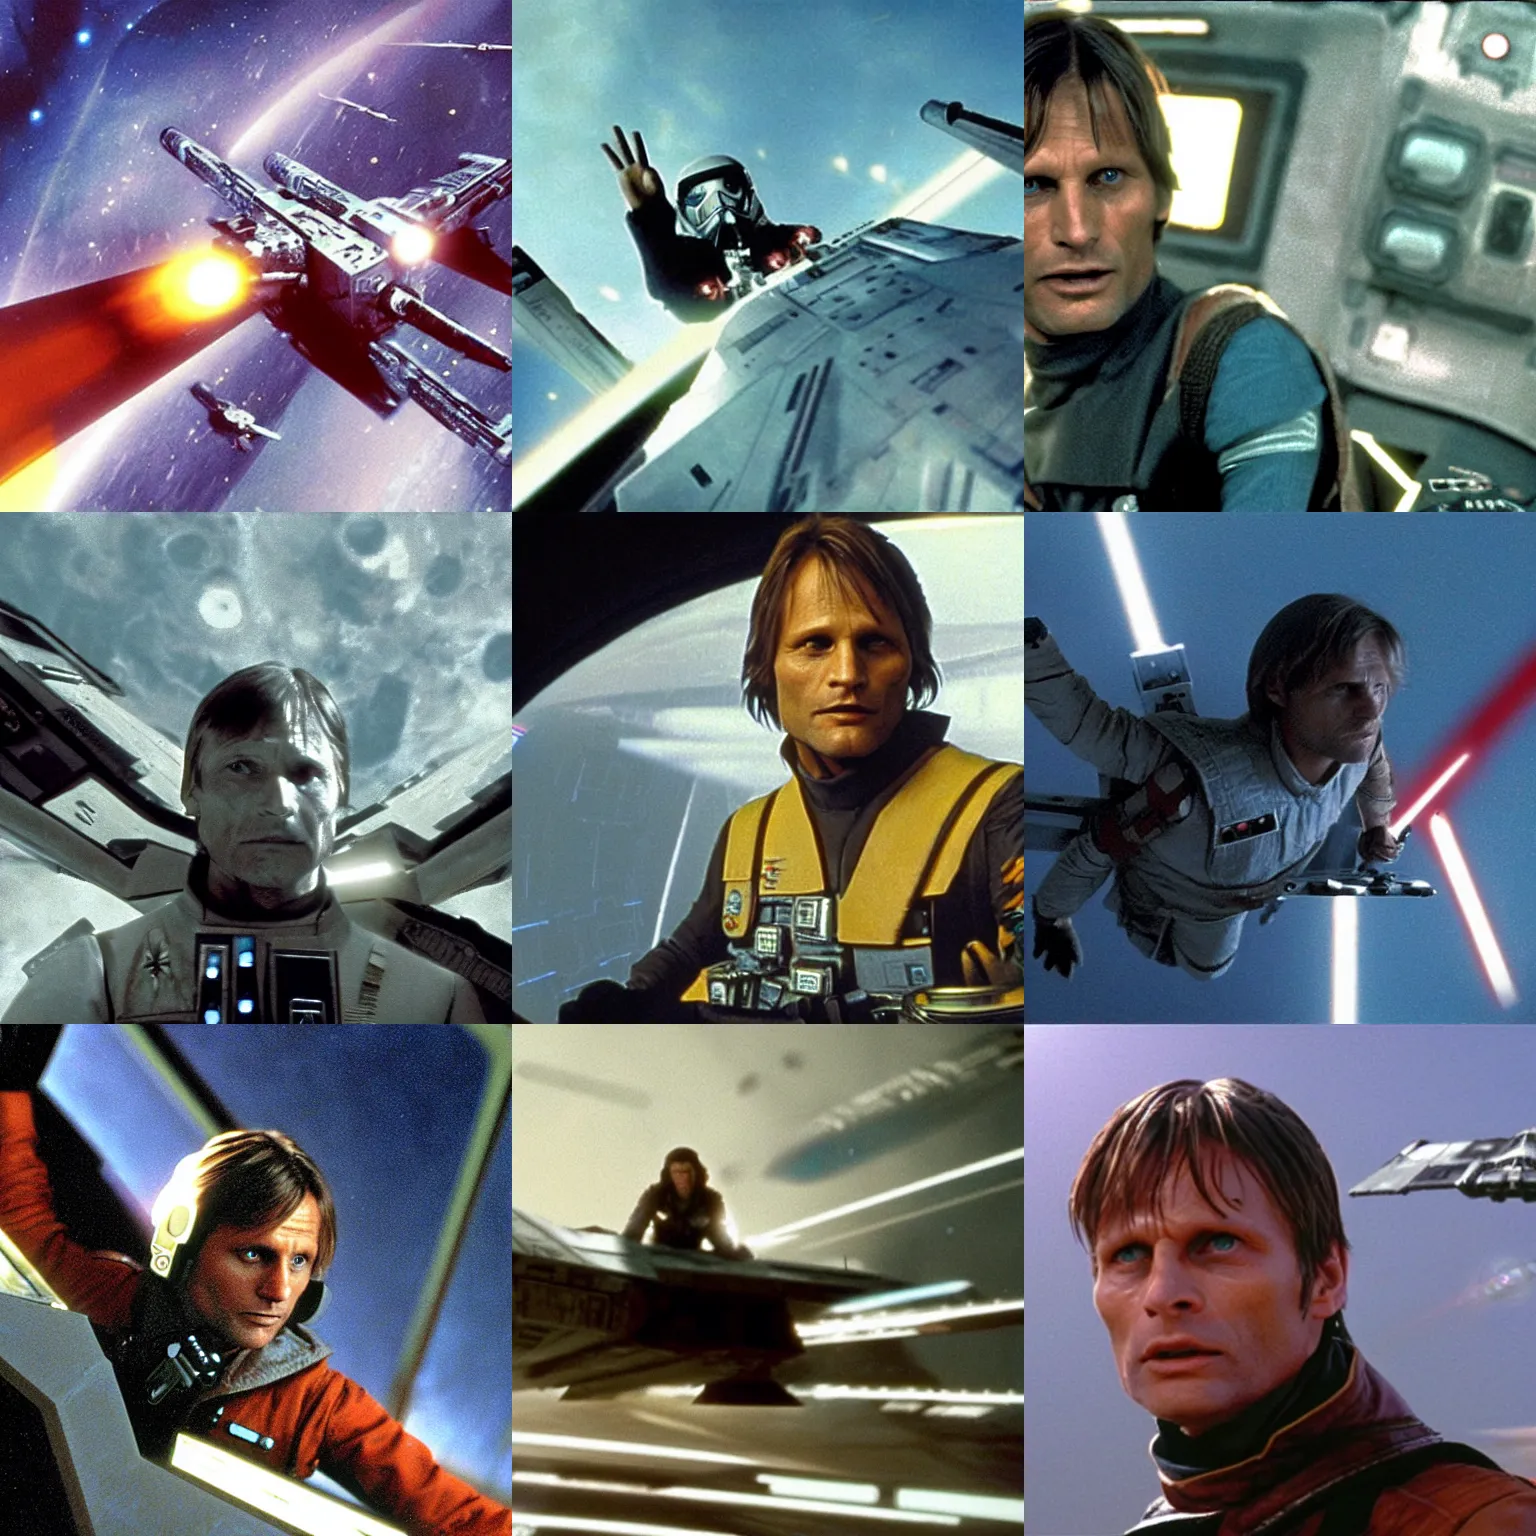 Prompt: Viggo Mortensen in an X-wing starfighter in the movie Star Wars